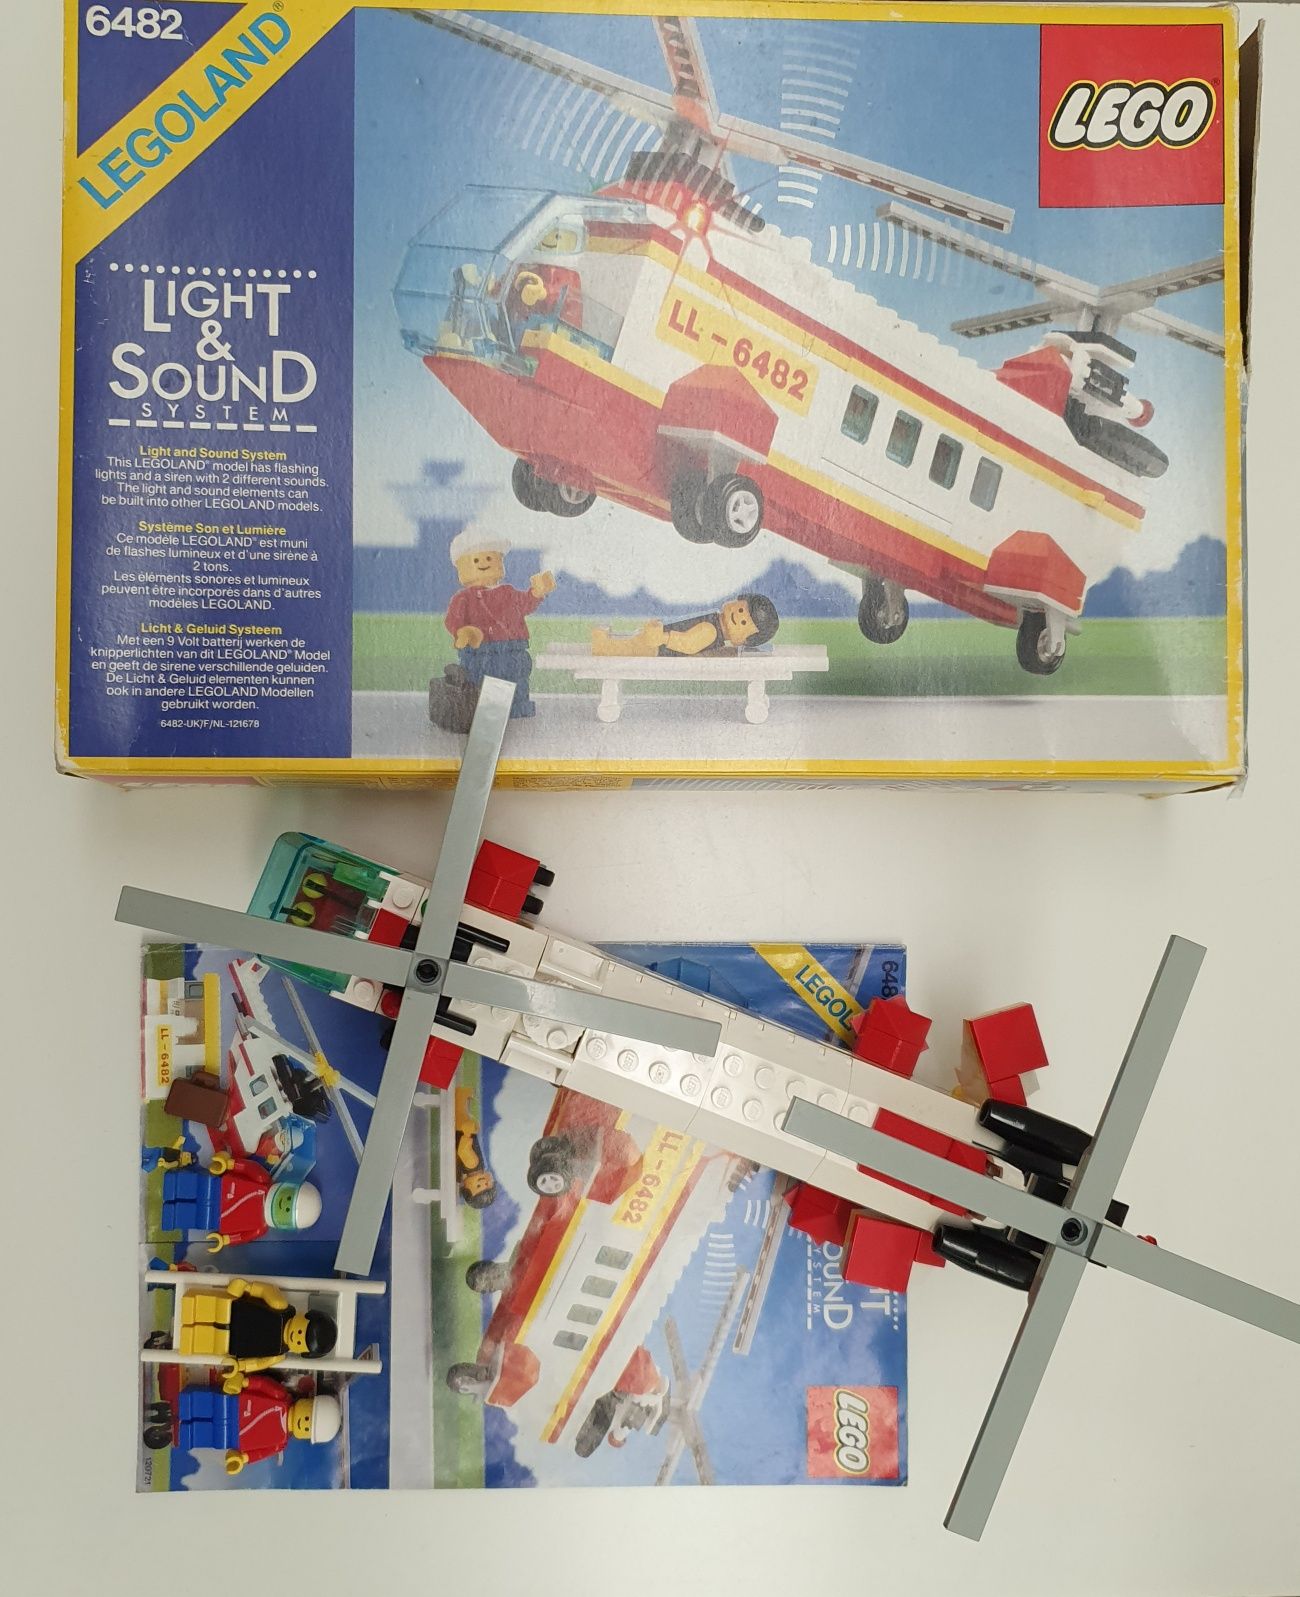 Lego Legoand System Town 6482